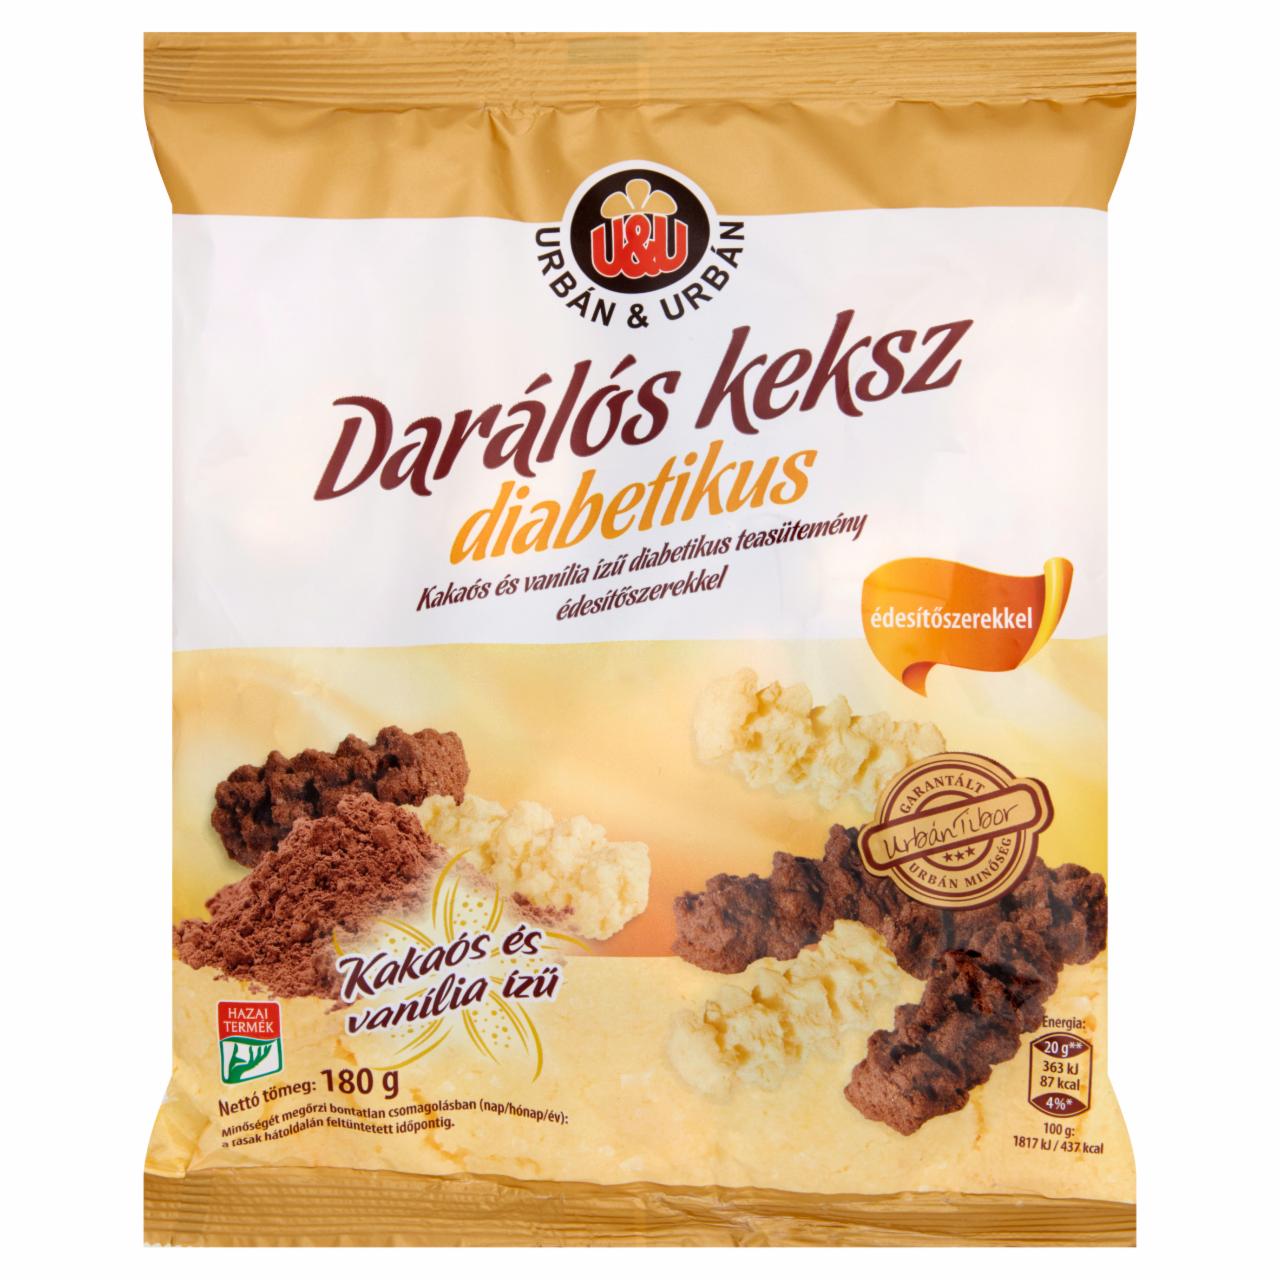 Képek - Urbán & Urbán kakaós és vanília ízű diabetikus darálós keksz édesítőszerekkel 180 g